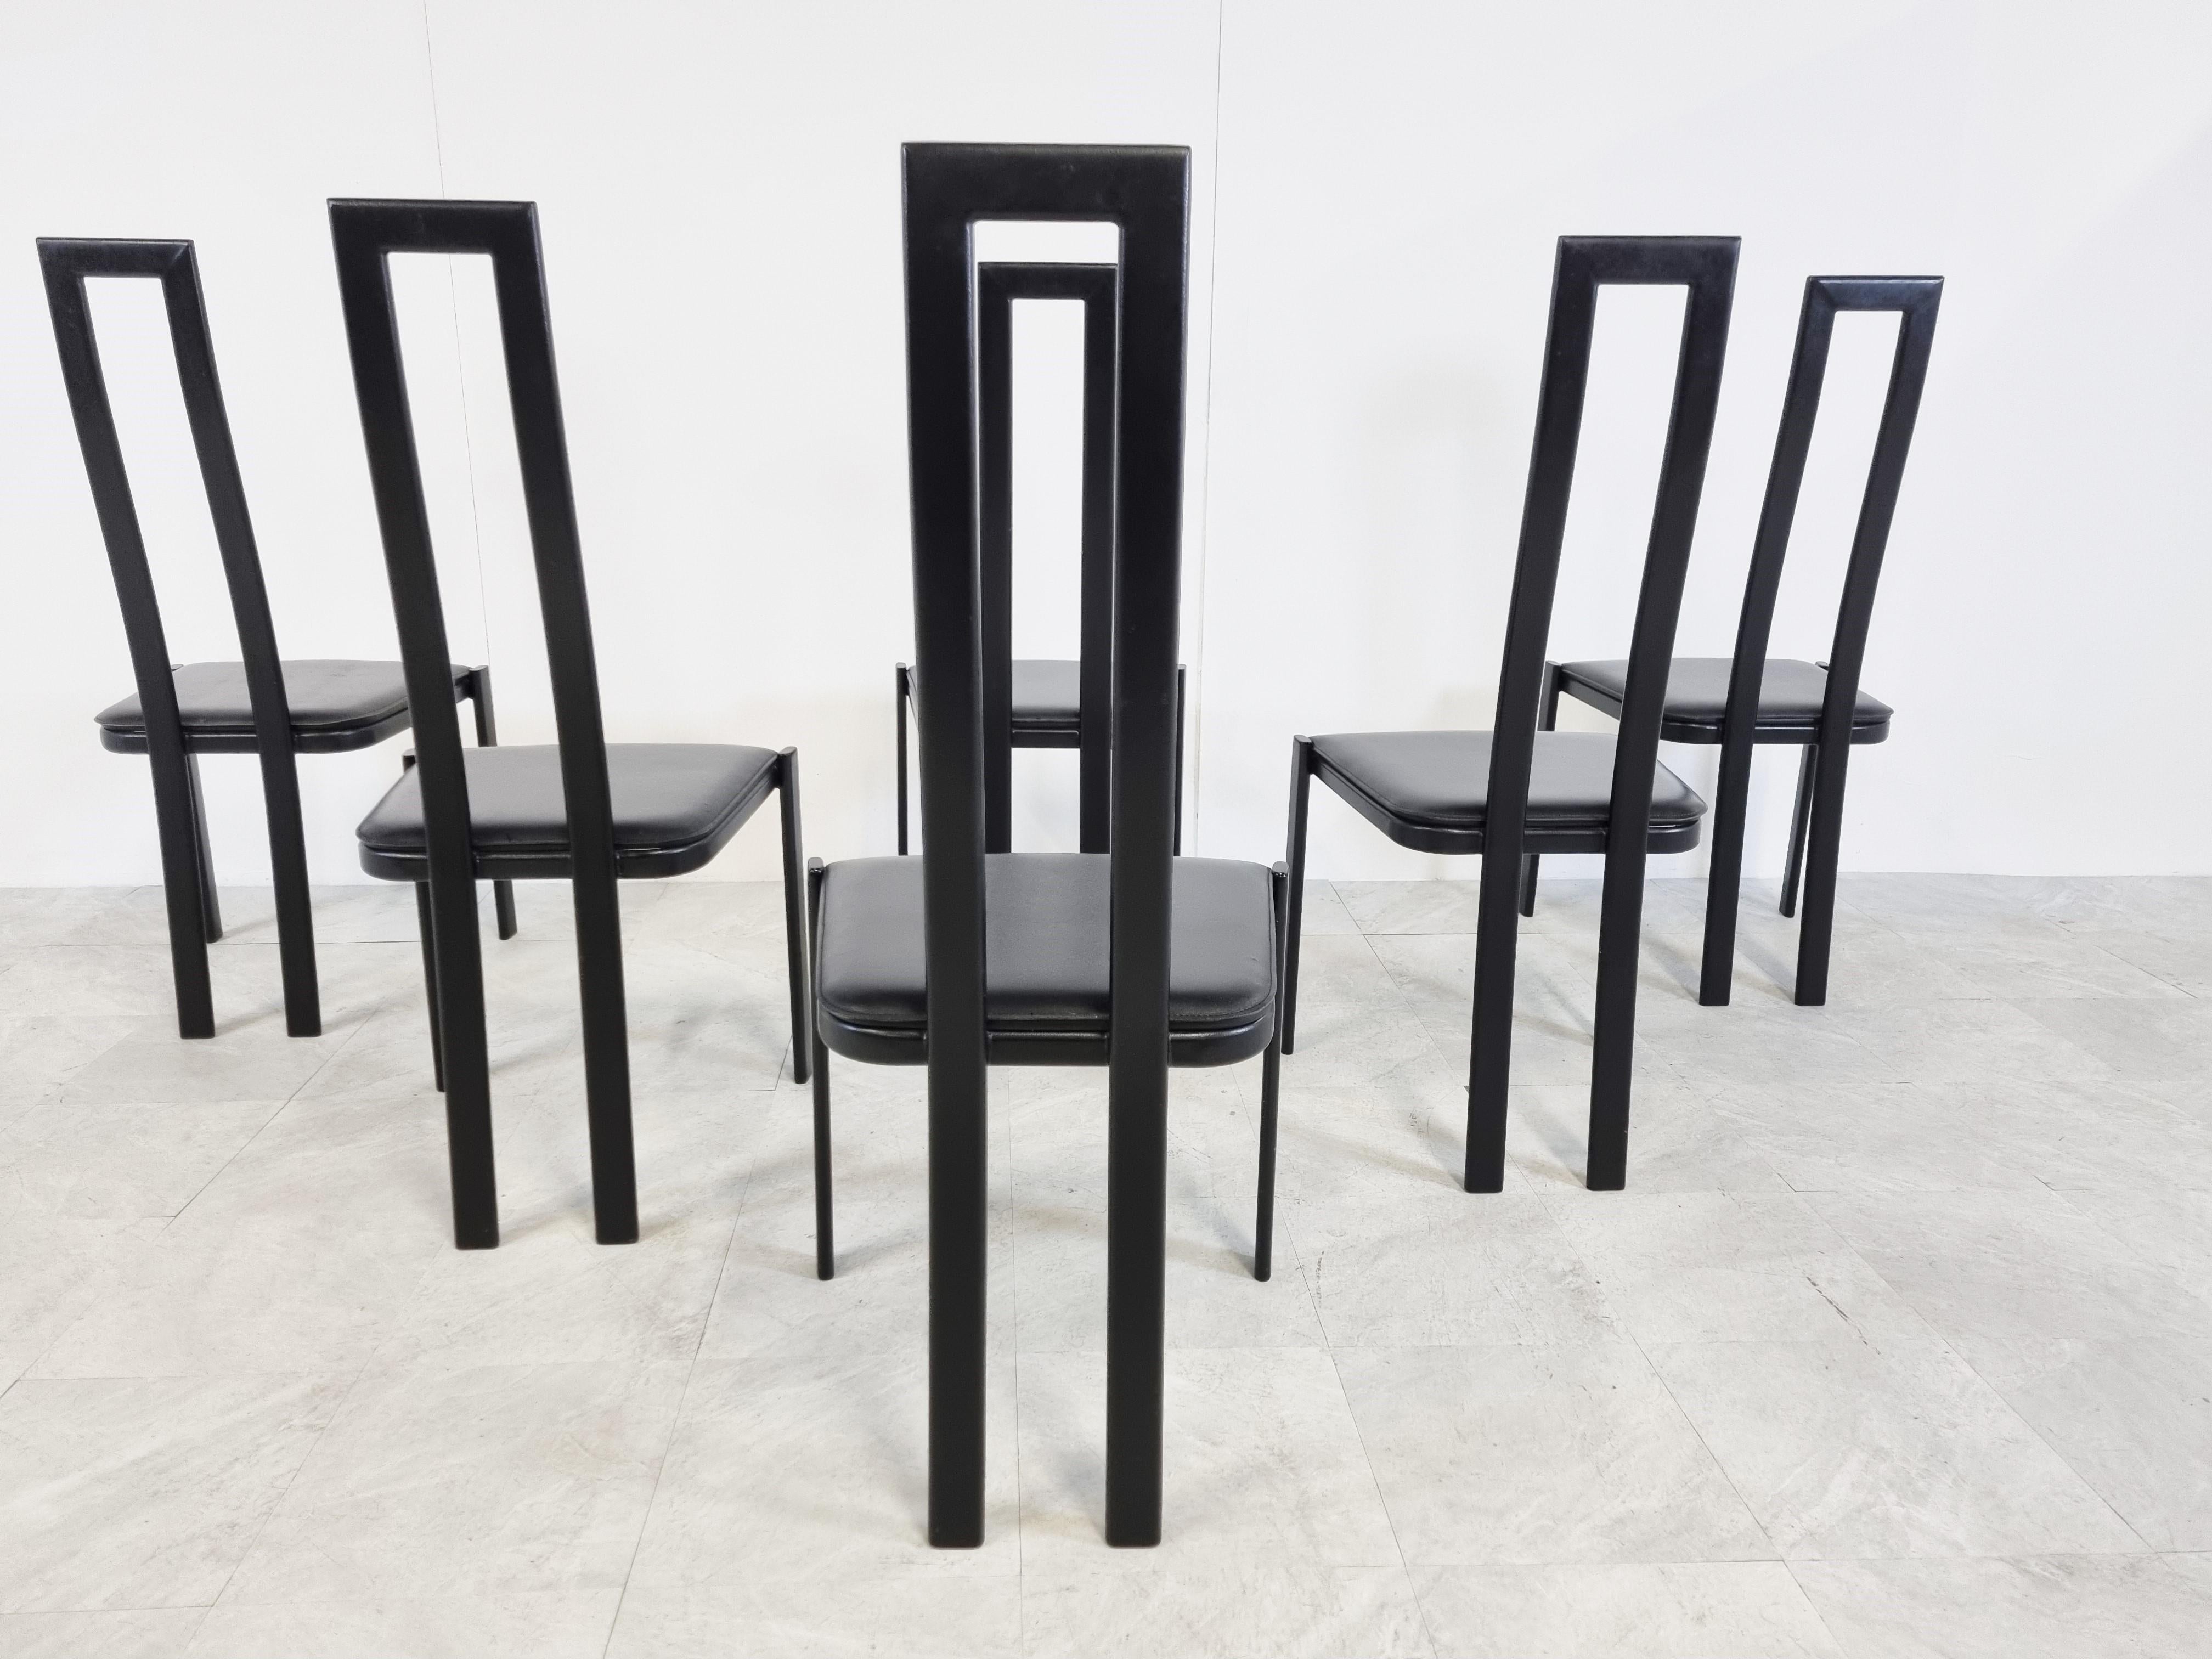 Chaises de salle à manger postmodernes en métal italien avec des cadres en métal noir et des sièges en cuir noir.

Bon état.

Dans le style de Cattelan Italie

années 1980 - Italie

Dimensions :
Hauteur : 104cm/40.94